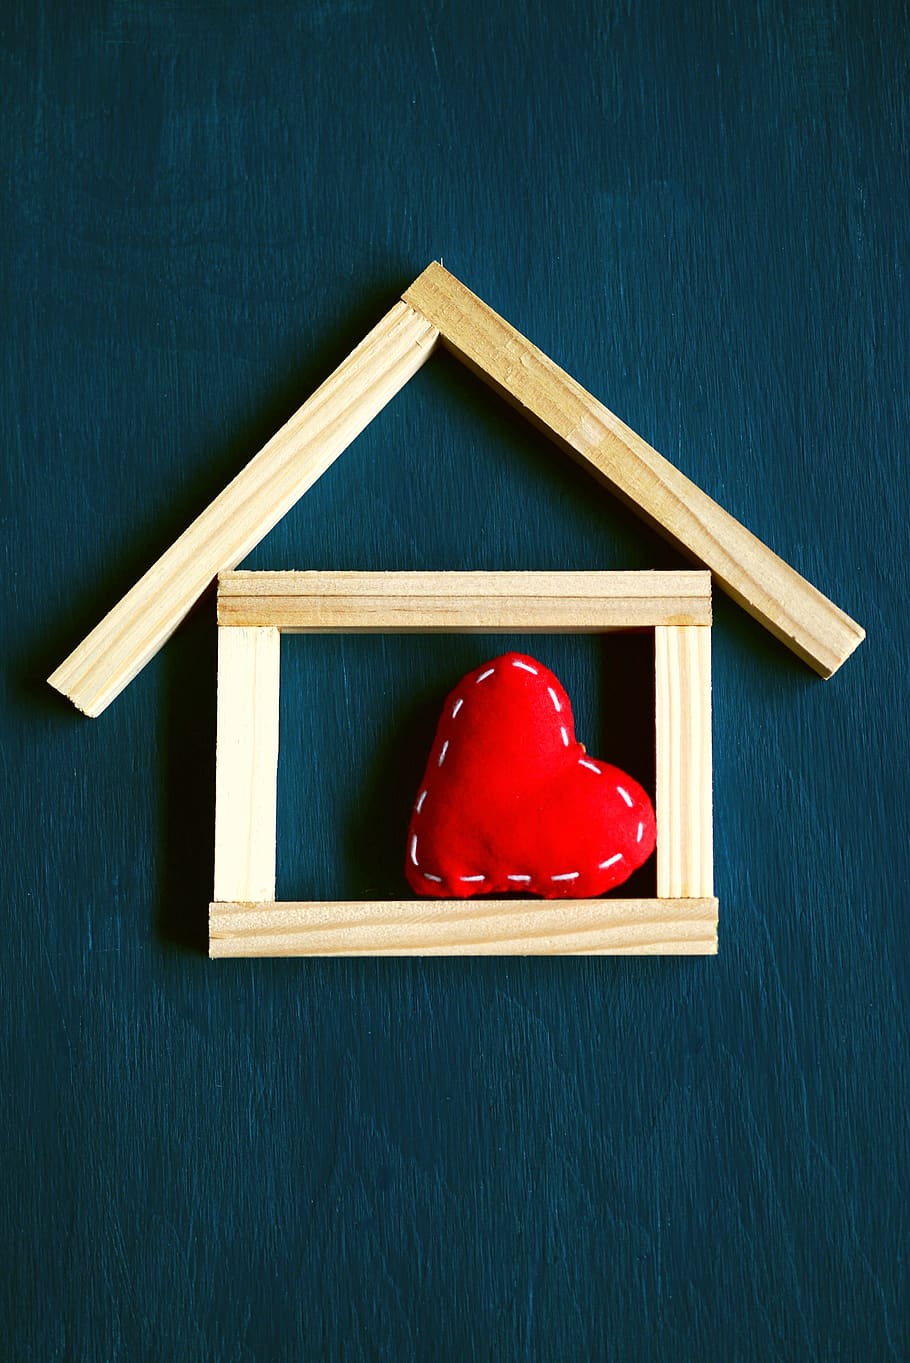 rumah, di rumah, simbol, hati, cinta, membangun, hidup, rumah dijual, real estat, bahan kayu